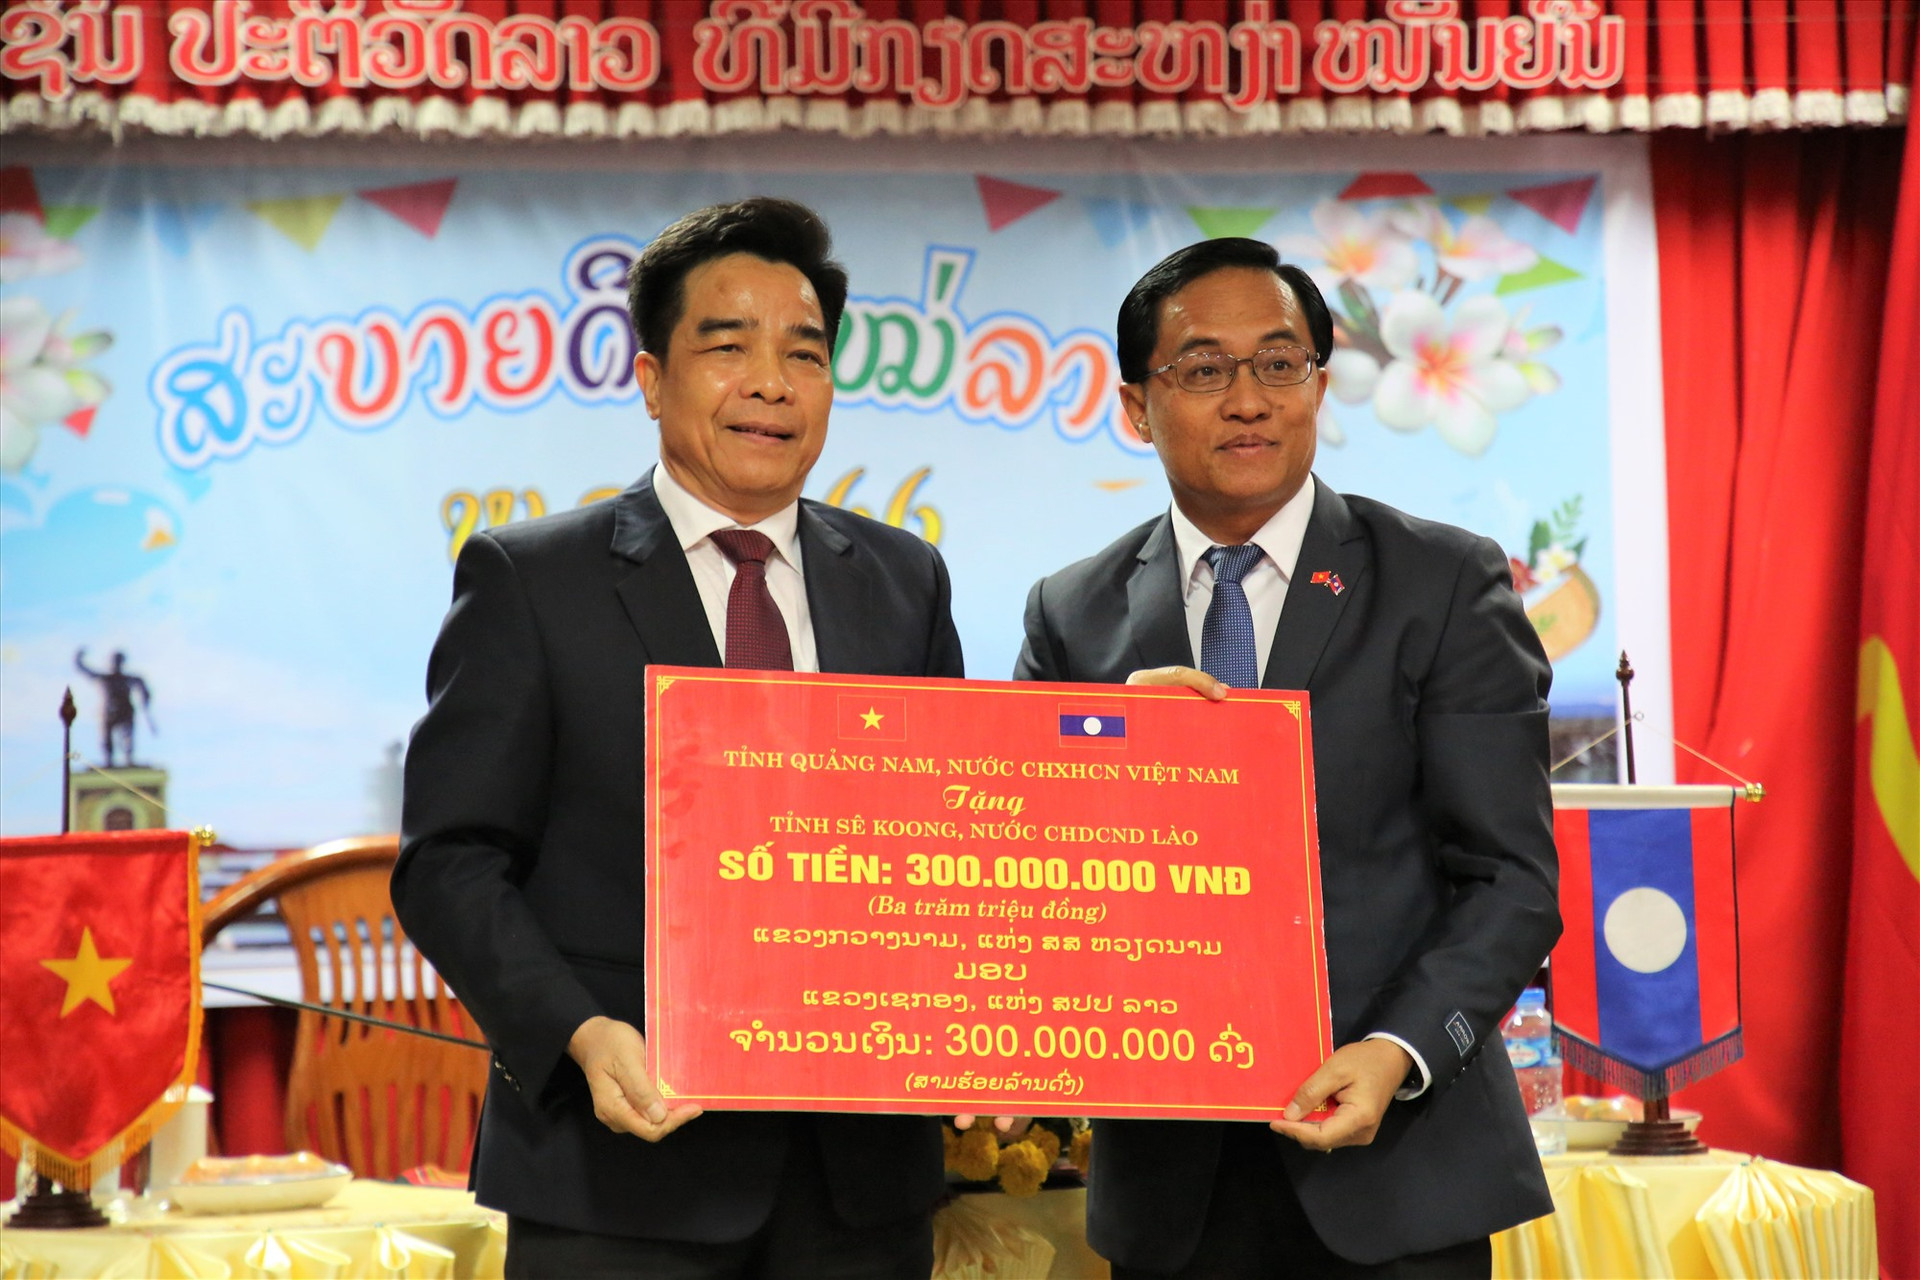 Thay mặt lãnh đạo tỉnh, đồng chí Lê Văn Dũng tặng biểu trưng 300 triệu đồng hỗ trợ cán bộ, nhân viên khó khăn tỉnh Sê Kông đón Tết. Ảnh: A.N